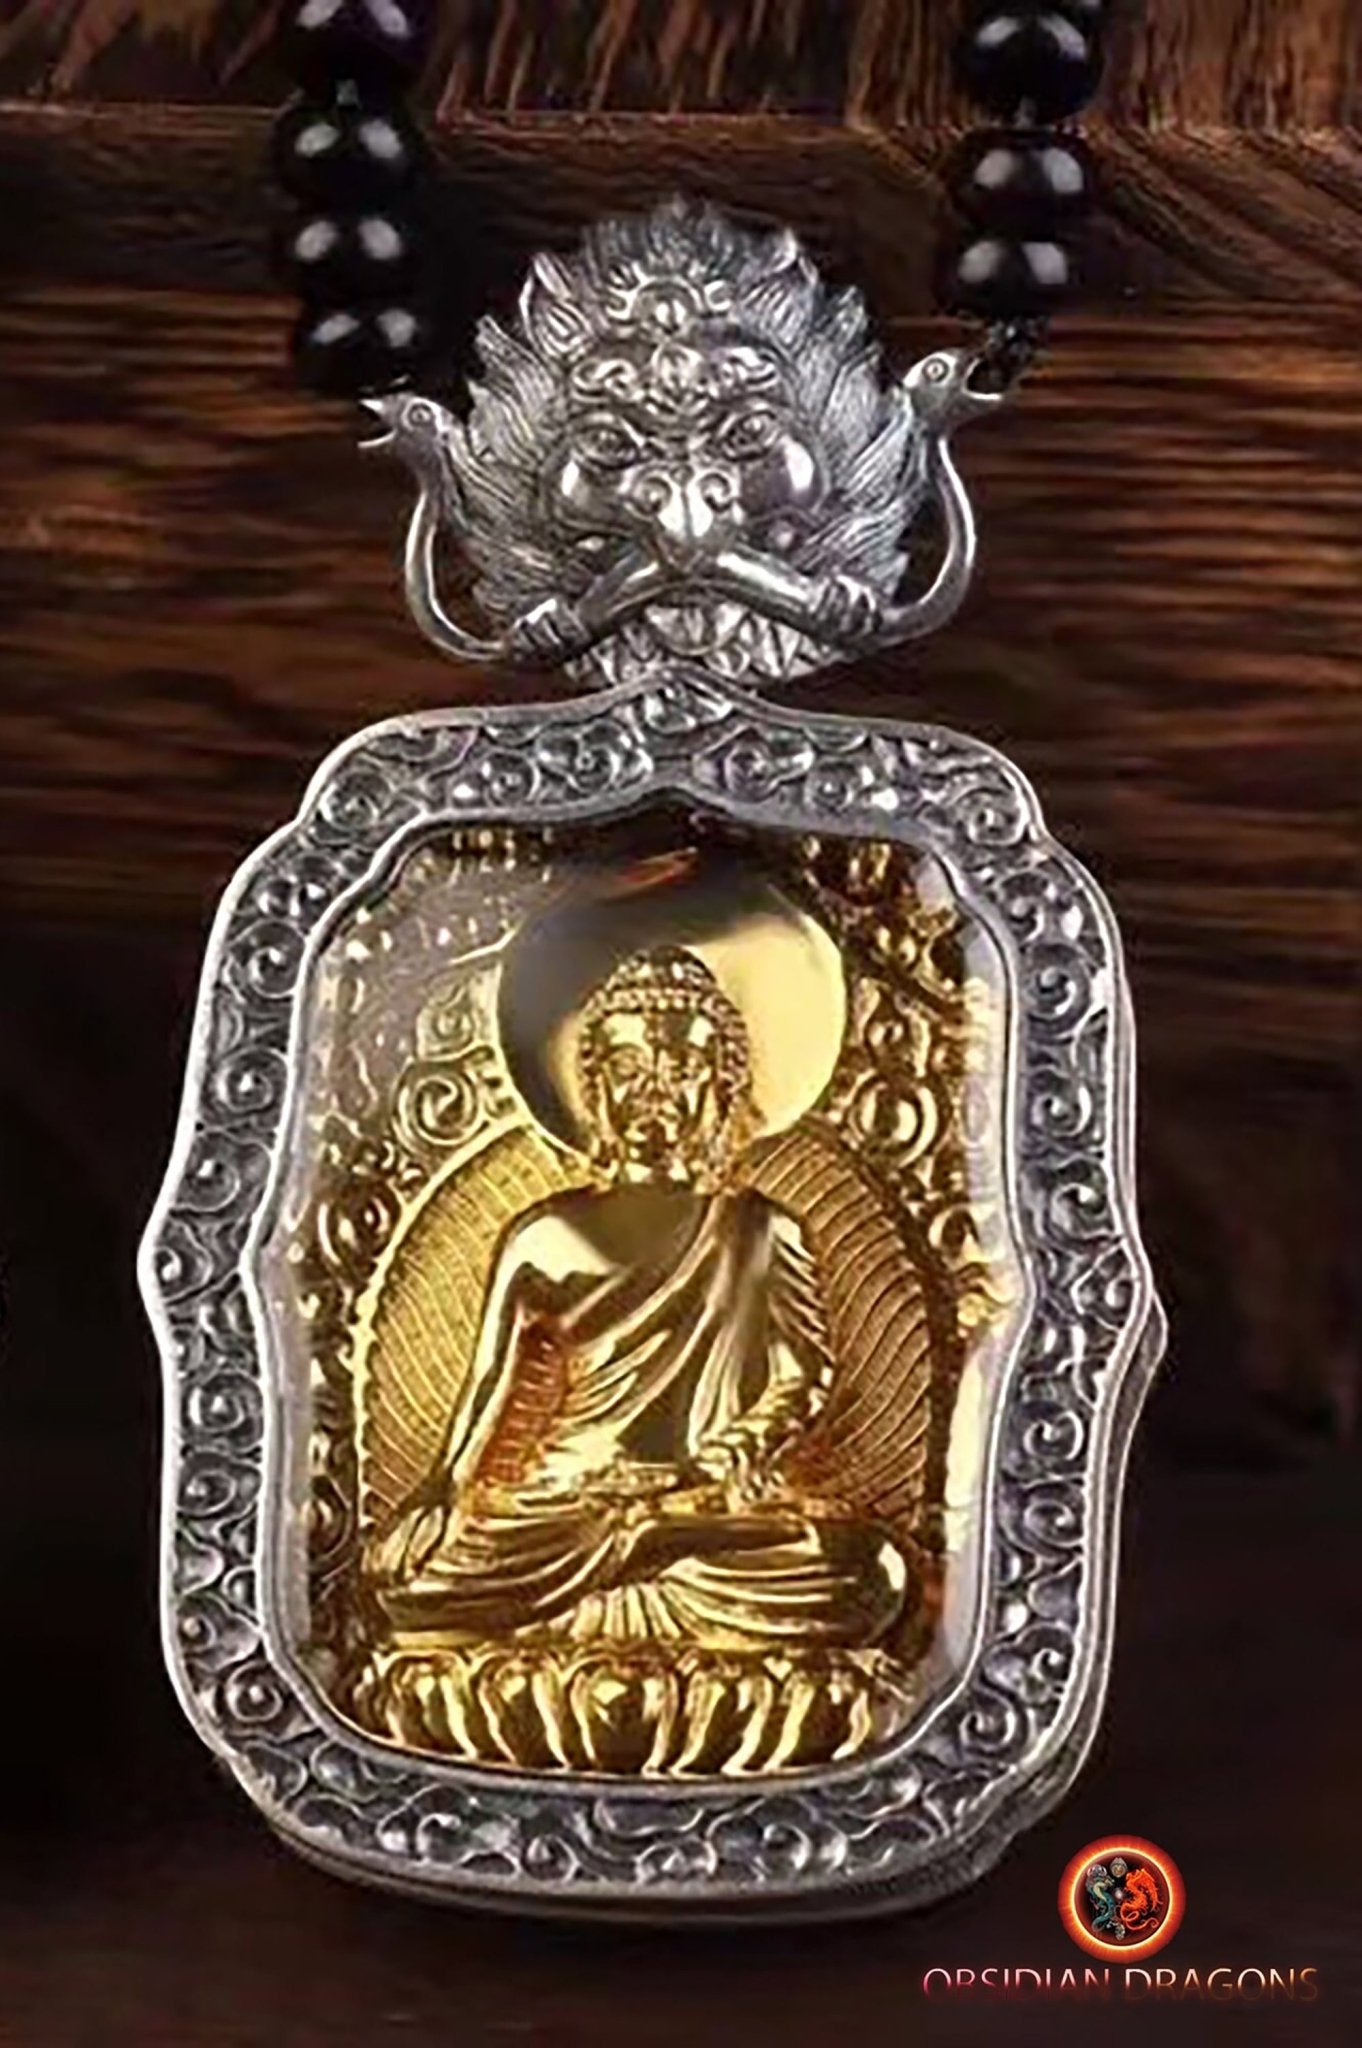 Collier & amulette Protection de Bouddha en obsidienne noire - 8